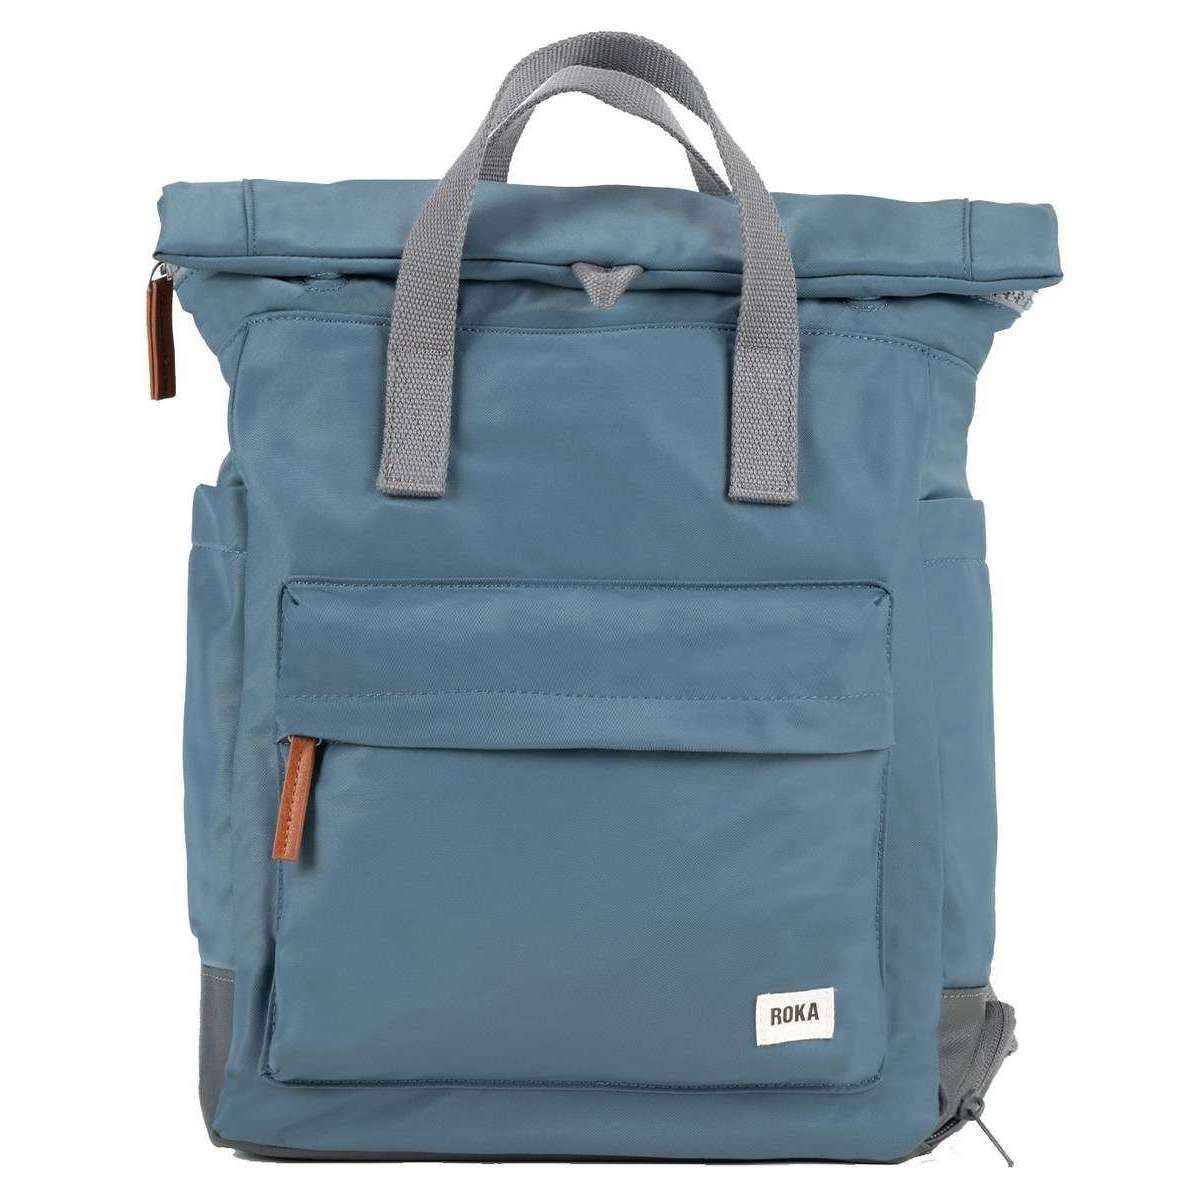 Roka Bayswater B Medium Sustainable Nylon Backpack - Airforce Blue